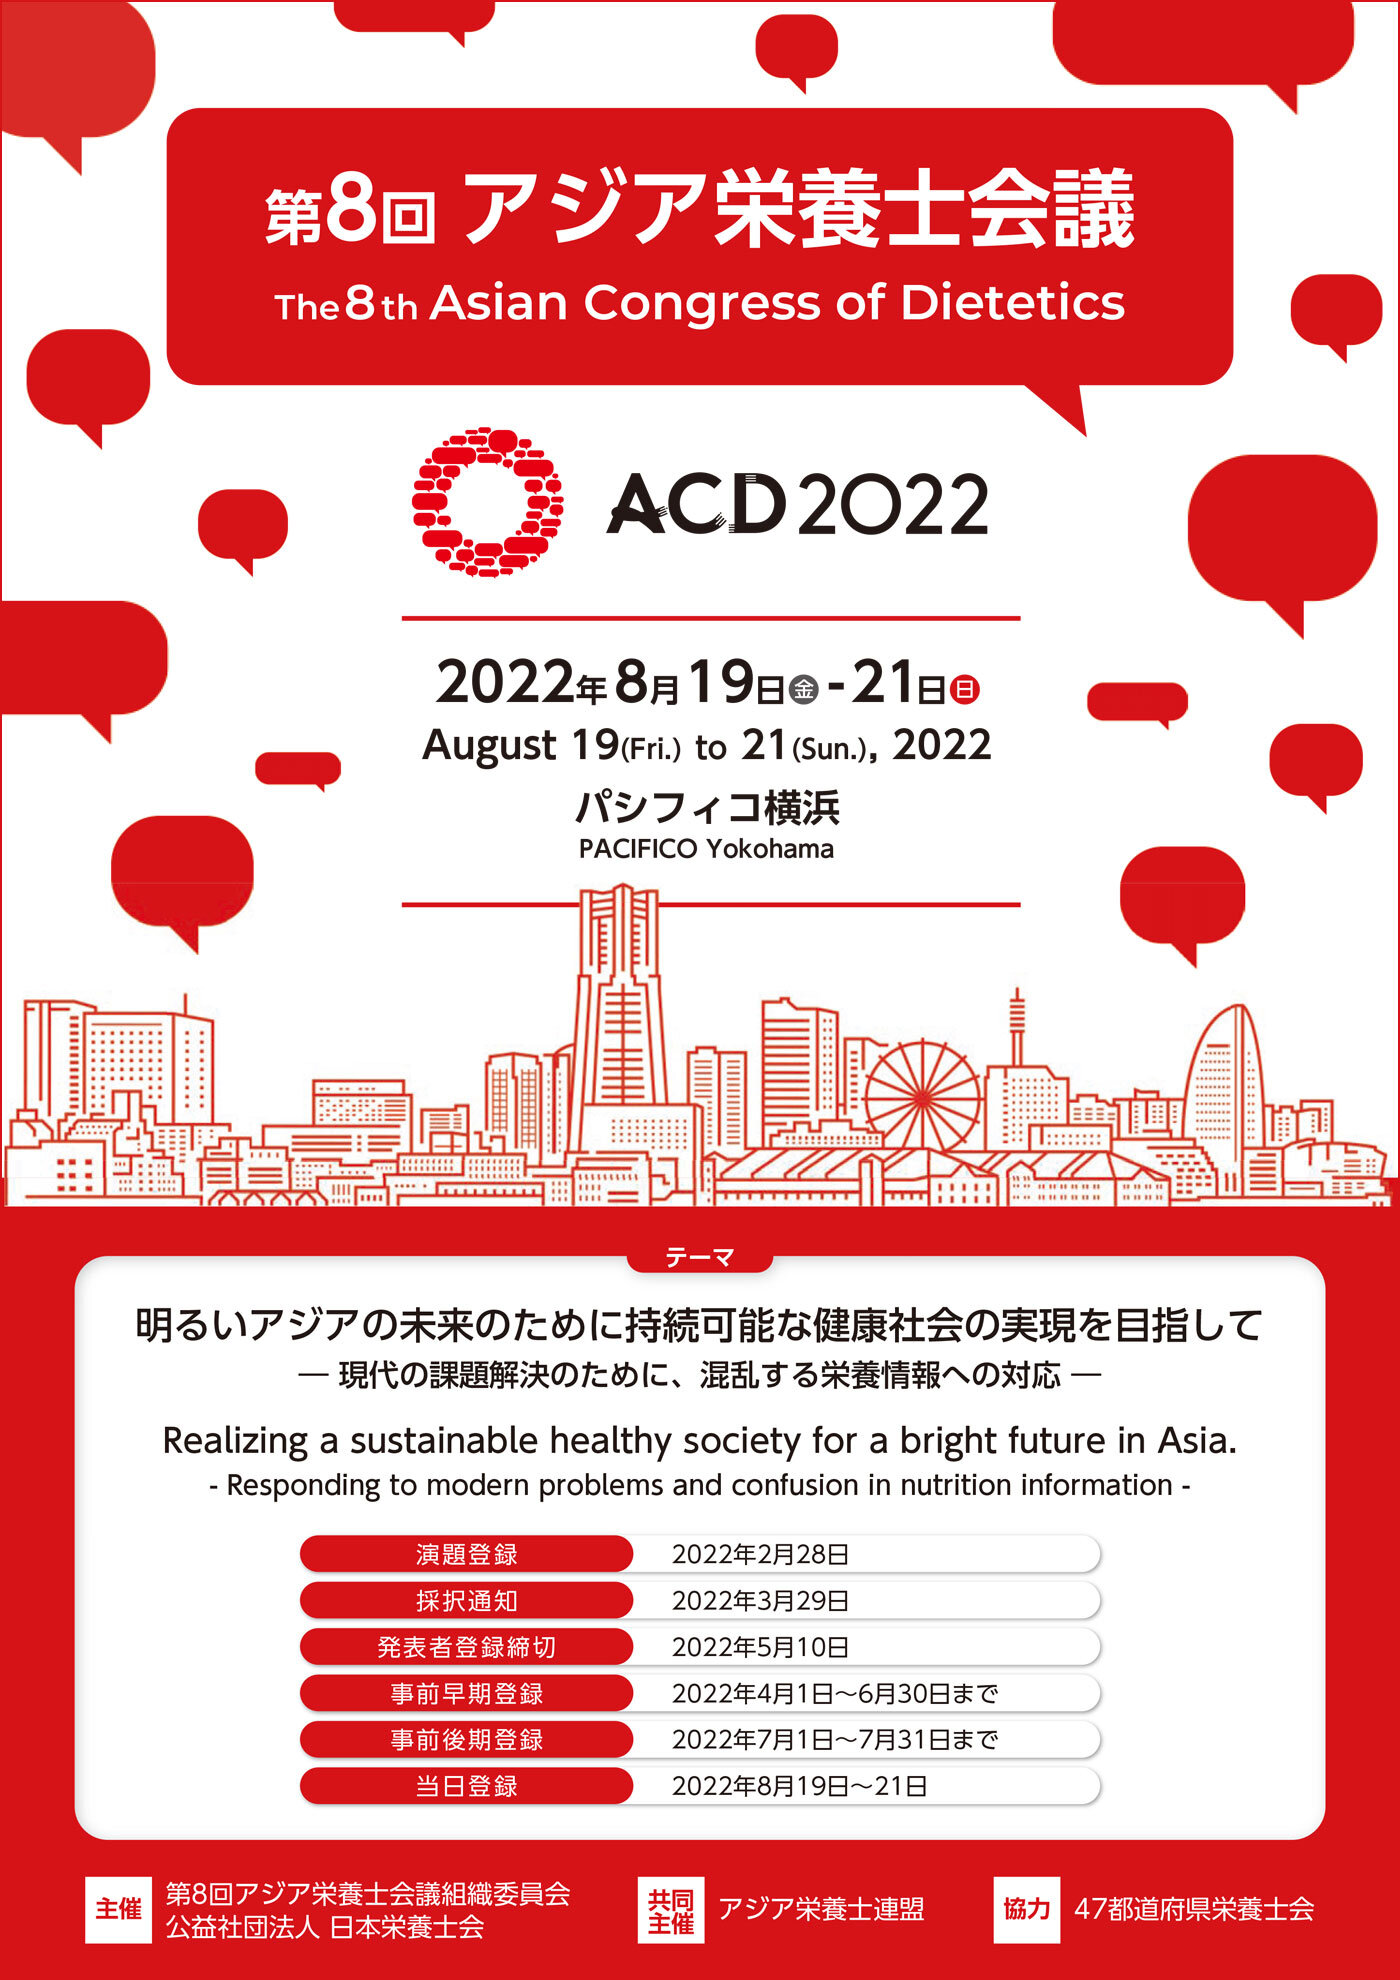 ACD2022 第8回アジア栄養士会議